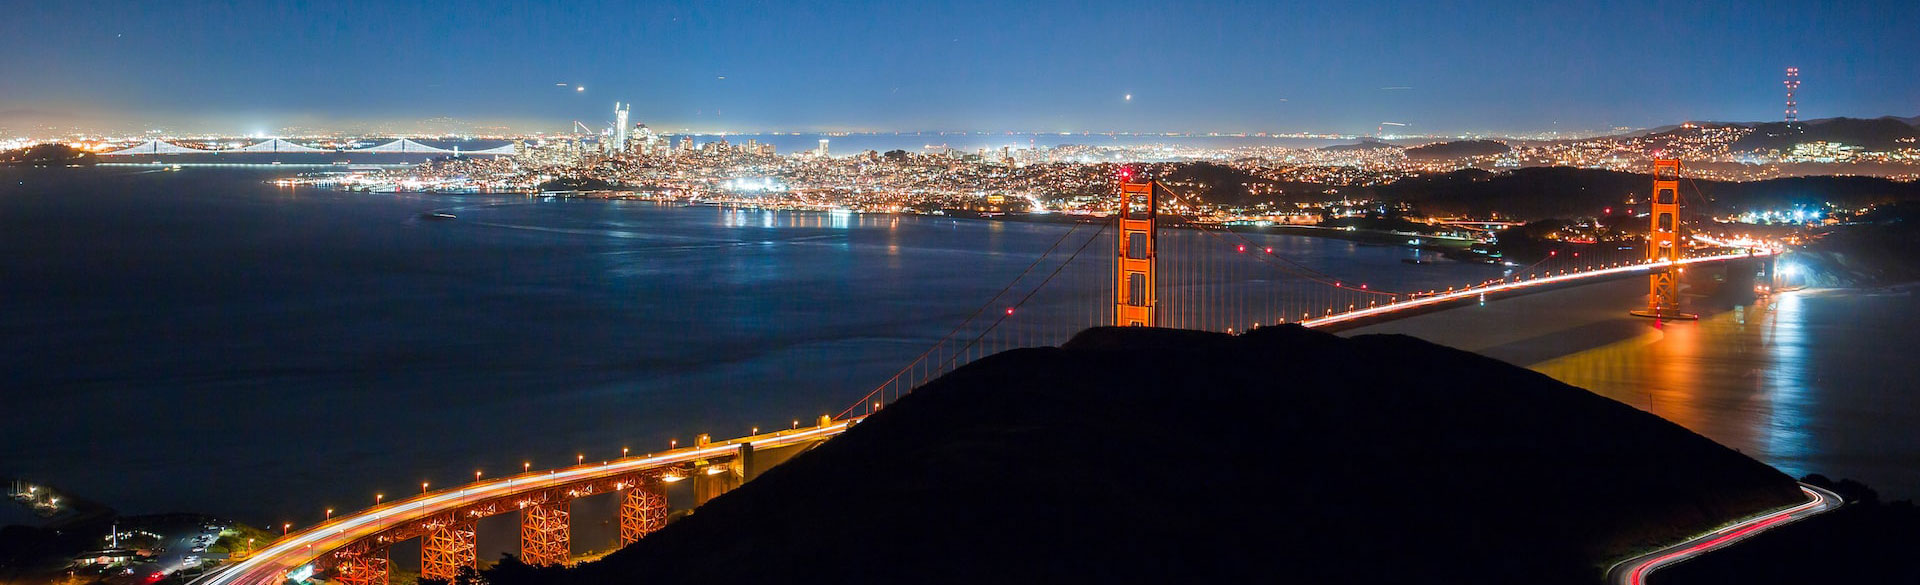 旧金山湾和金门大桥的夜景